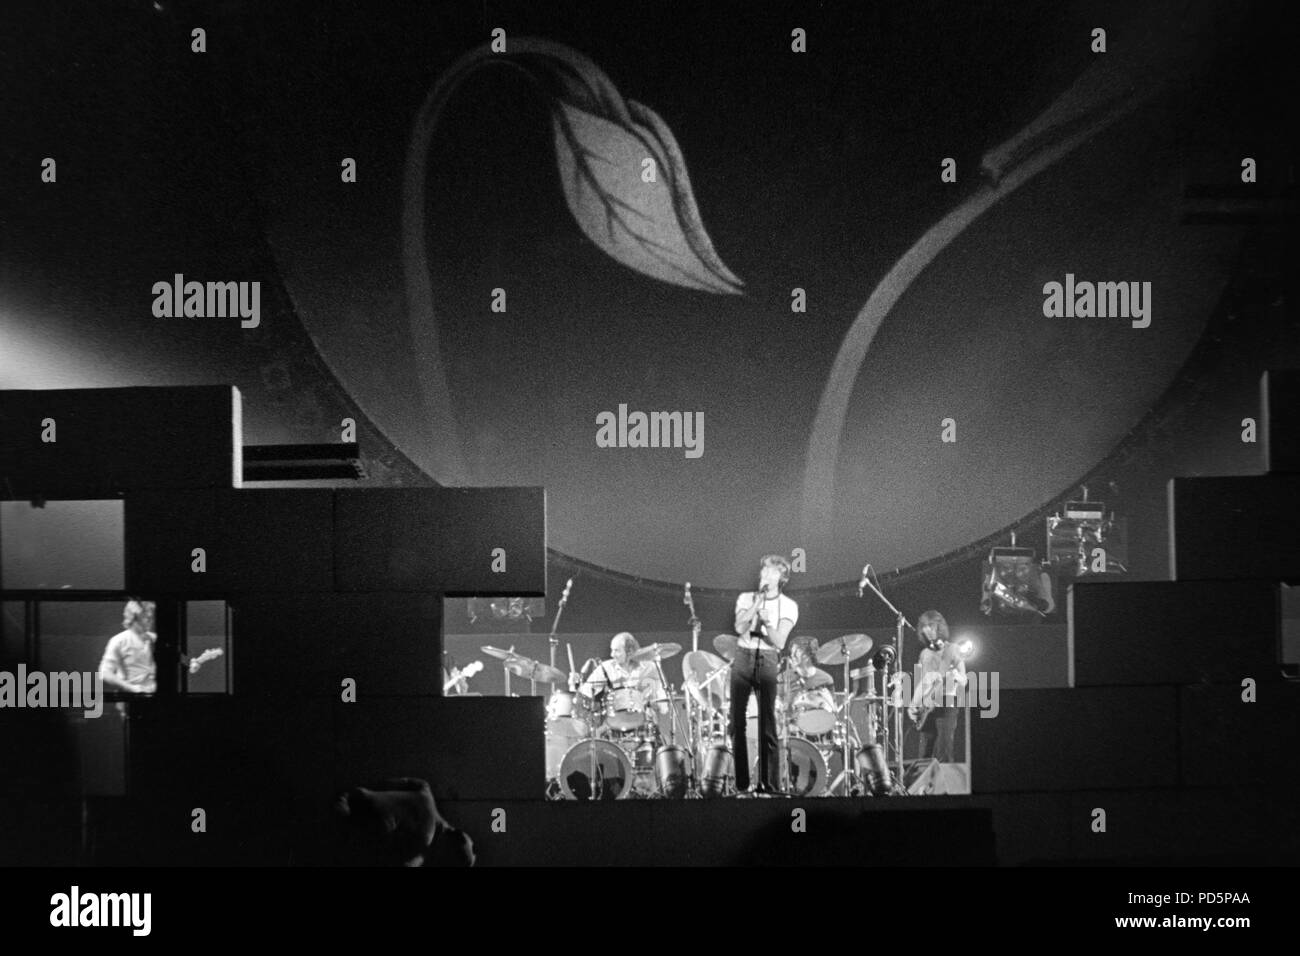 Dortmund, Germania, 20th. Feb.1981 -cantante, compositore, bassista e compositore Roger Waters (con microfono) del british rock psichedelico band PINK FLOYD eseguendo la parete con un concerto presso la Westfalenhalle di Dortmund/Germania (immagine digitale da una b/w-film-negativo) Foto Stock